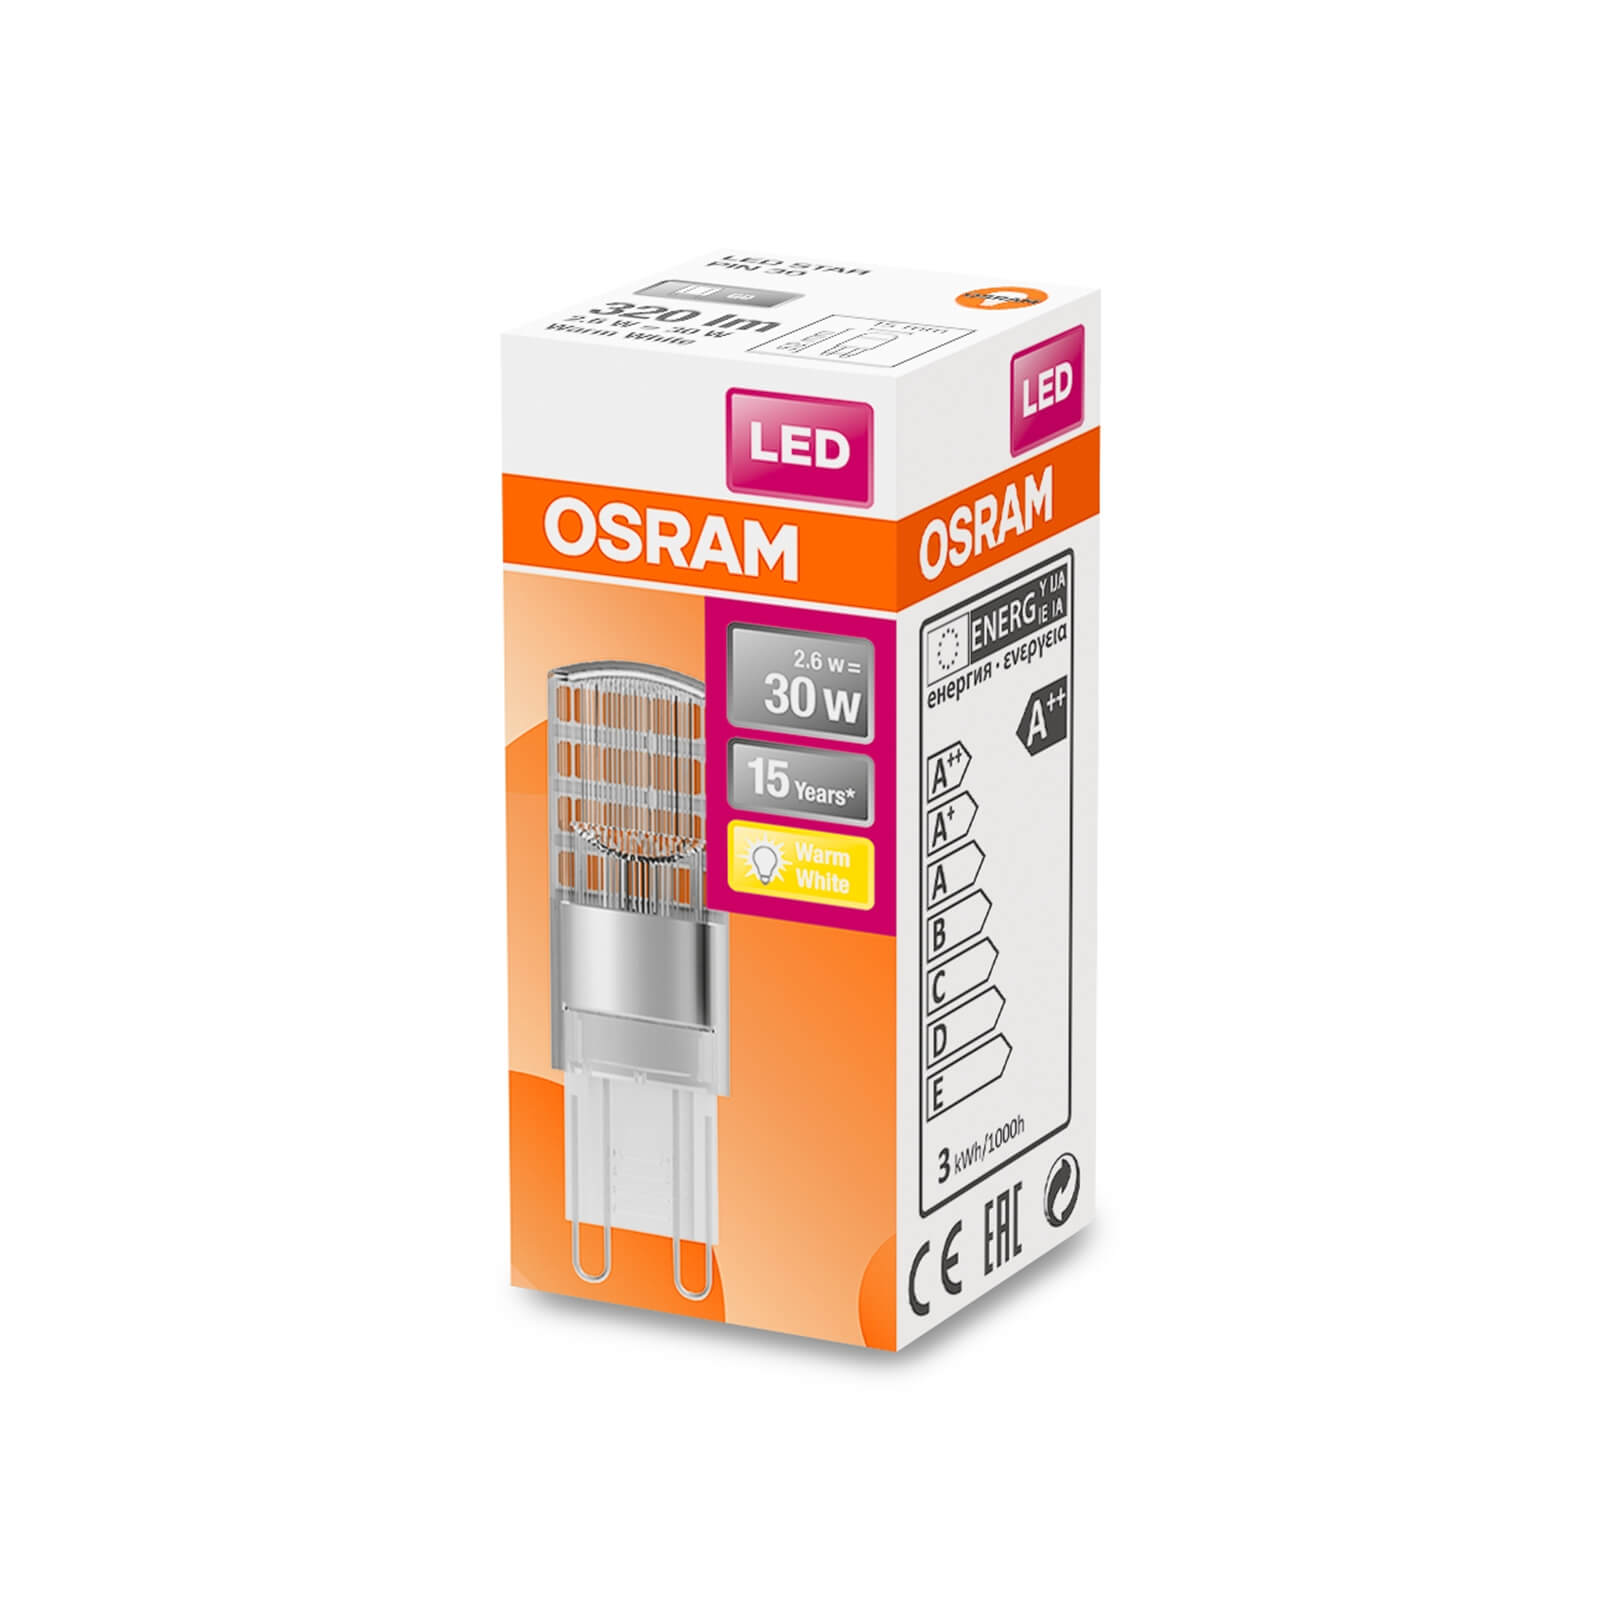 Osram LED G9 30w Light Bulb